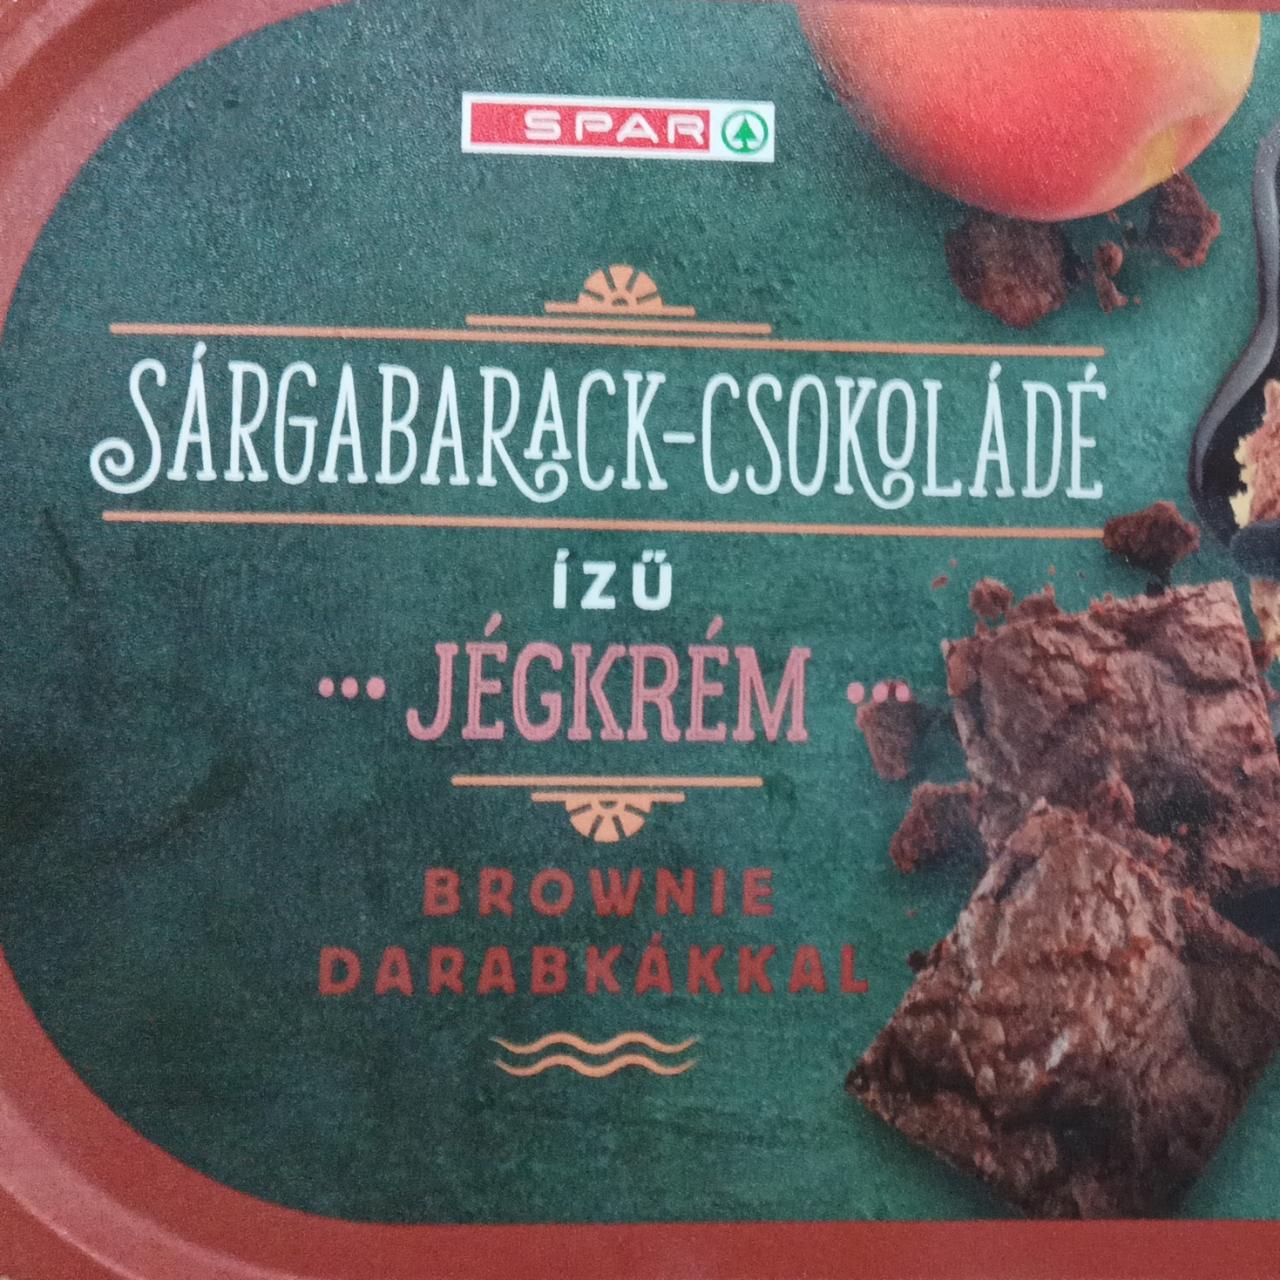 Képek - Sárgabarack-csokoládé ízű jégkrém brownie darabokkal Spar